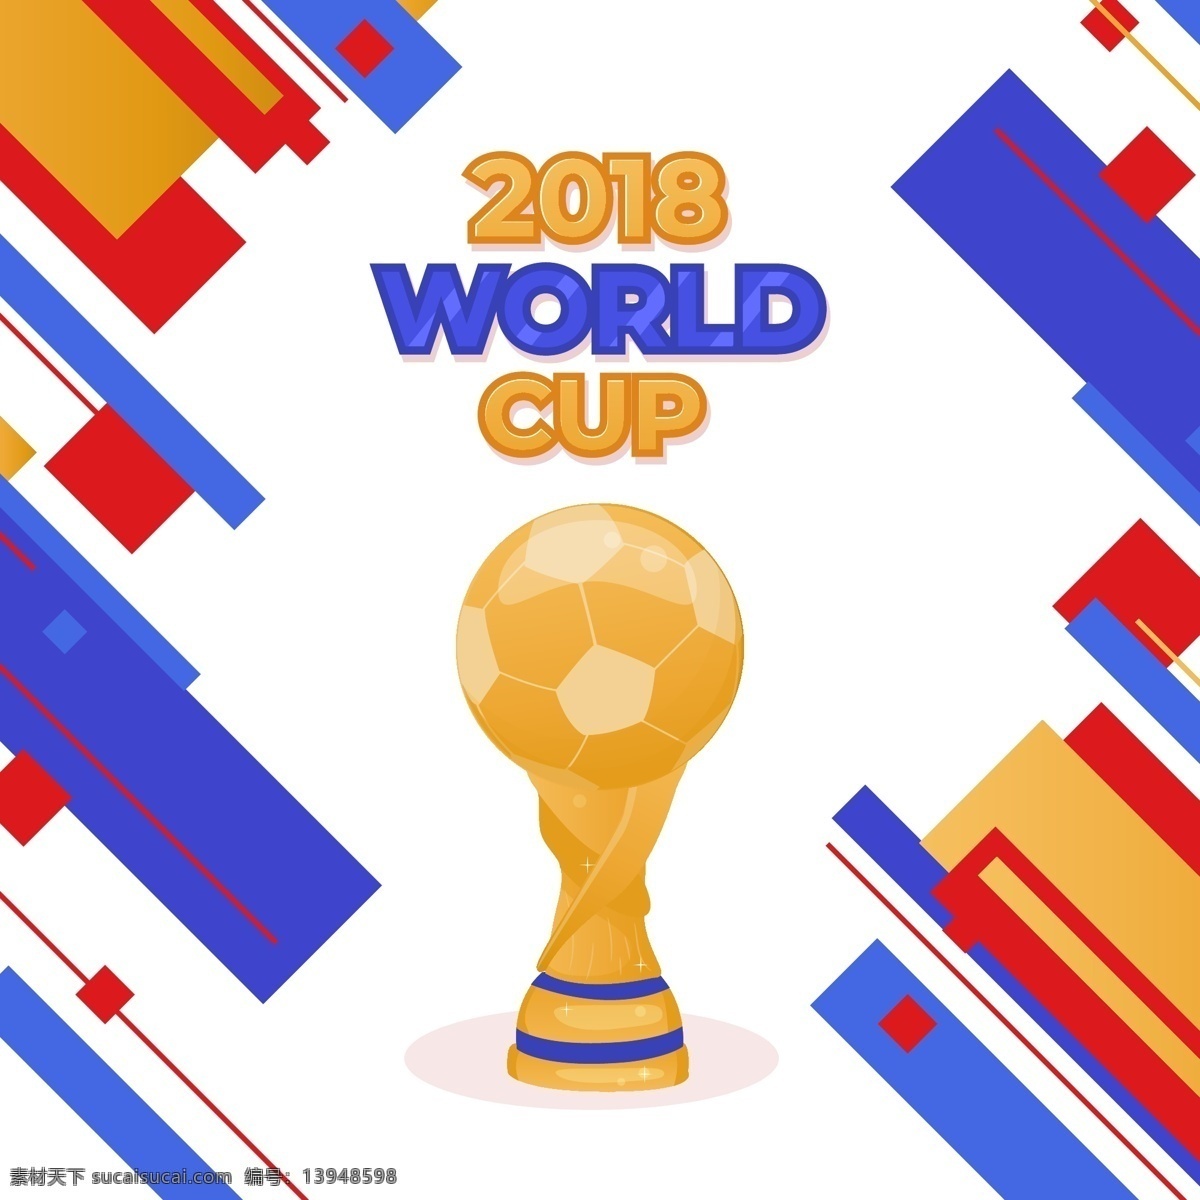 矢量 奖杯 装饰 世界杯 足球赛 背景 条纹 金色 体育 2018 俄罗斯